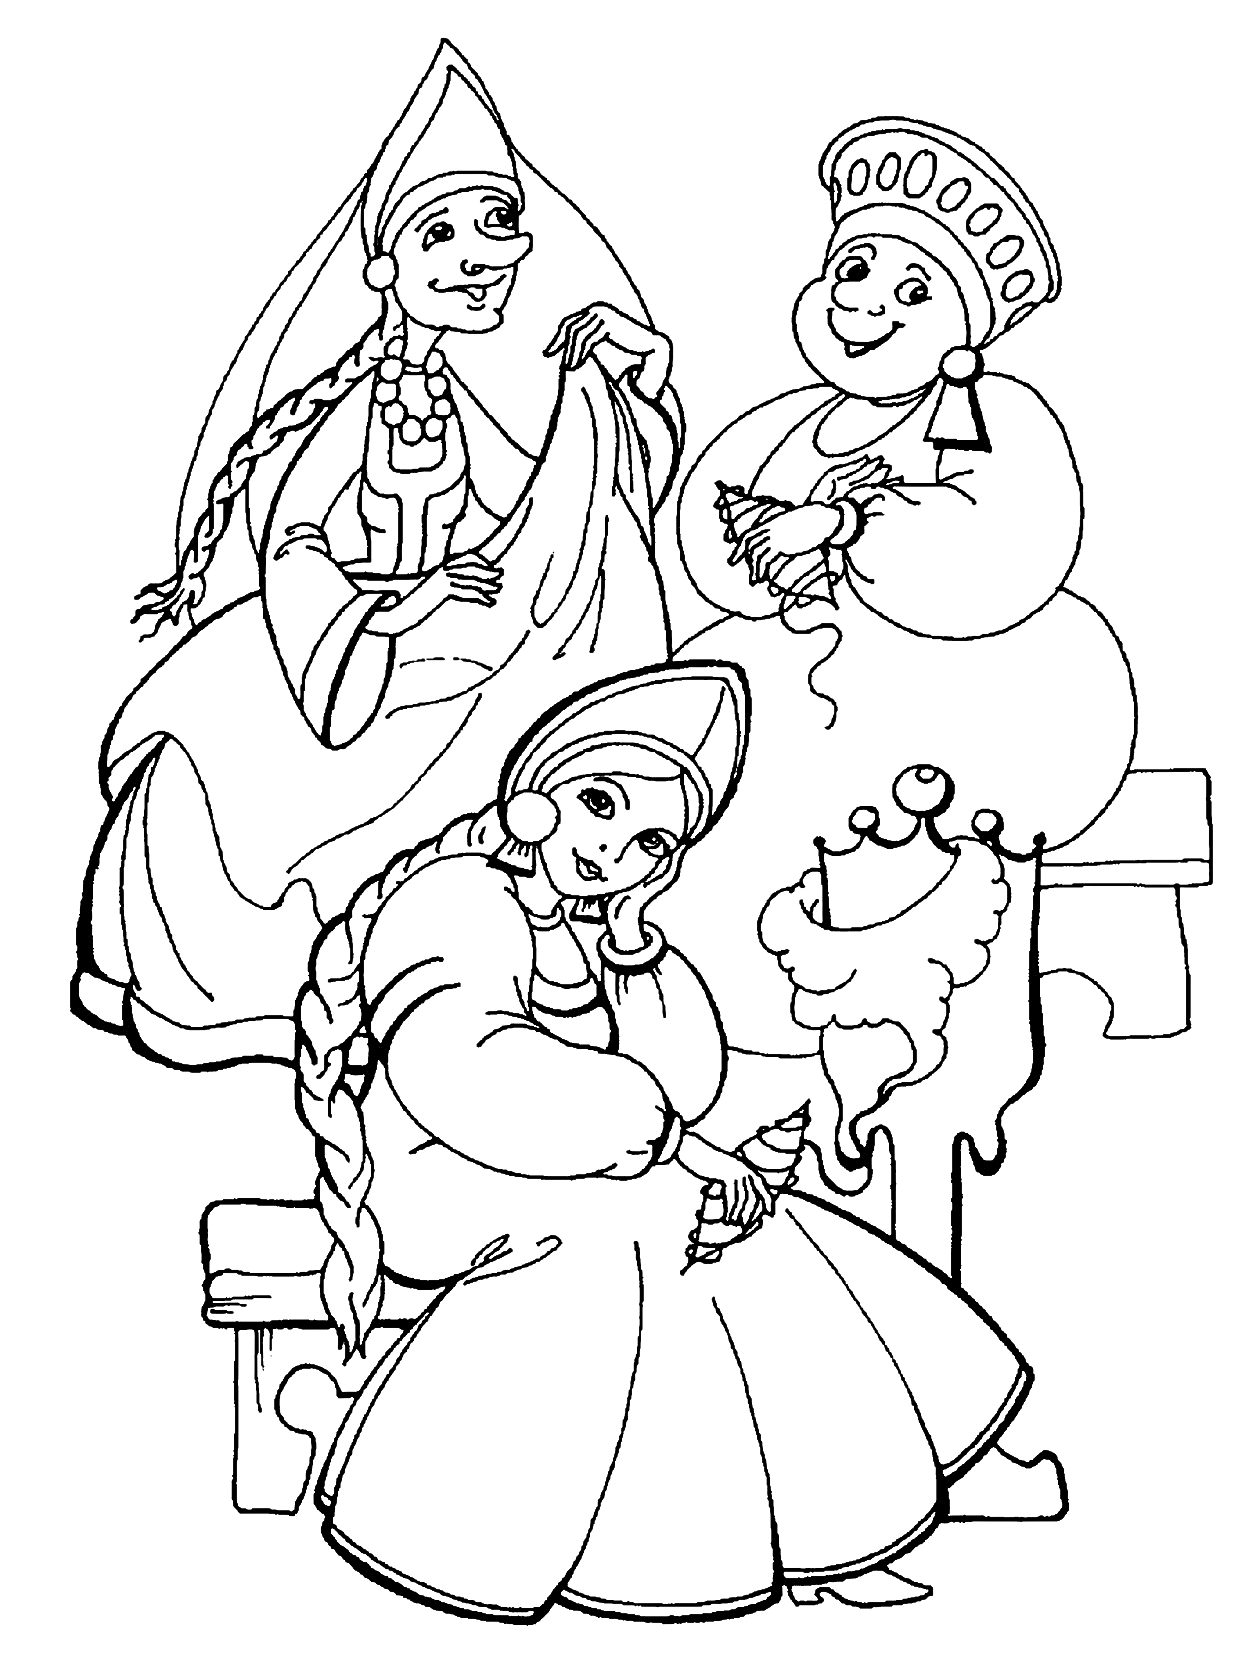 Три сестры в традиционных русских костюмах, сидящие на лавке